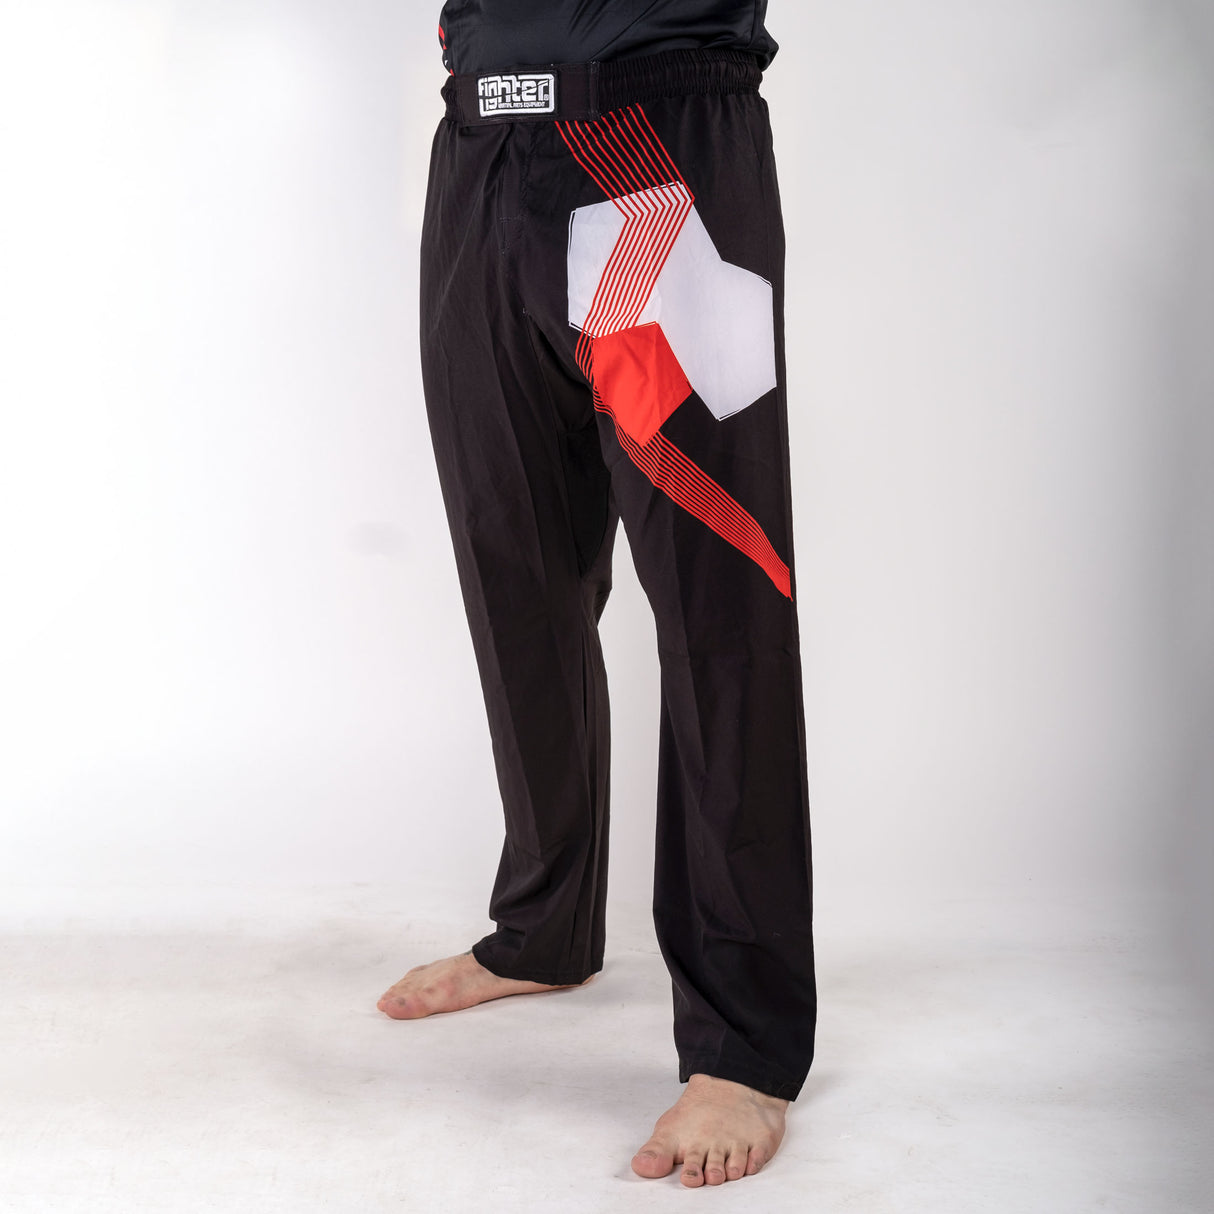 Pantalon Fighter - FIGHT - noir/rouge, FF-P002BRW